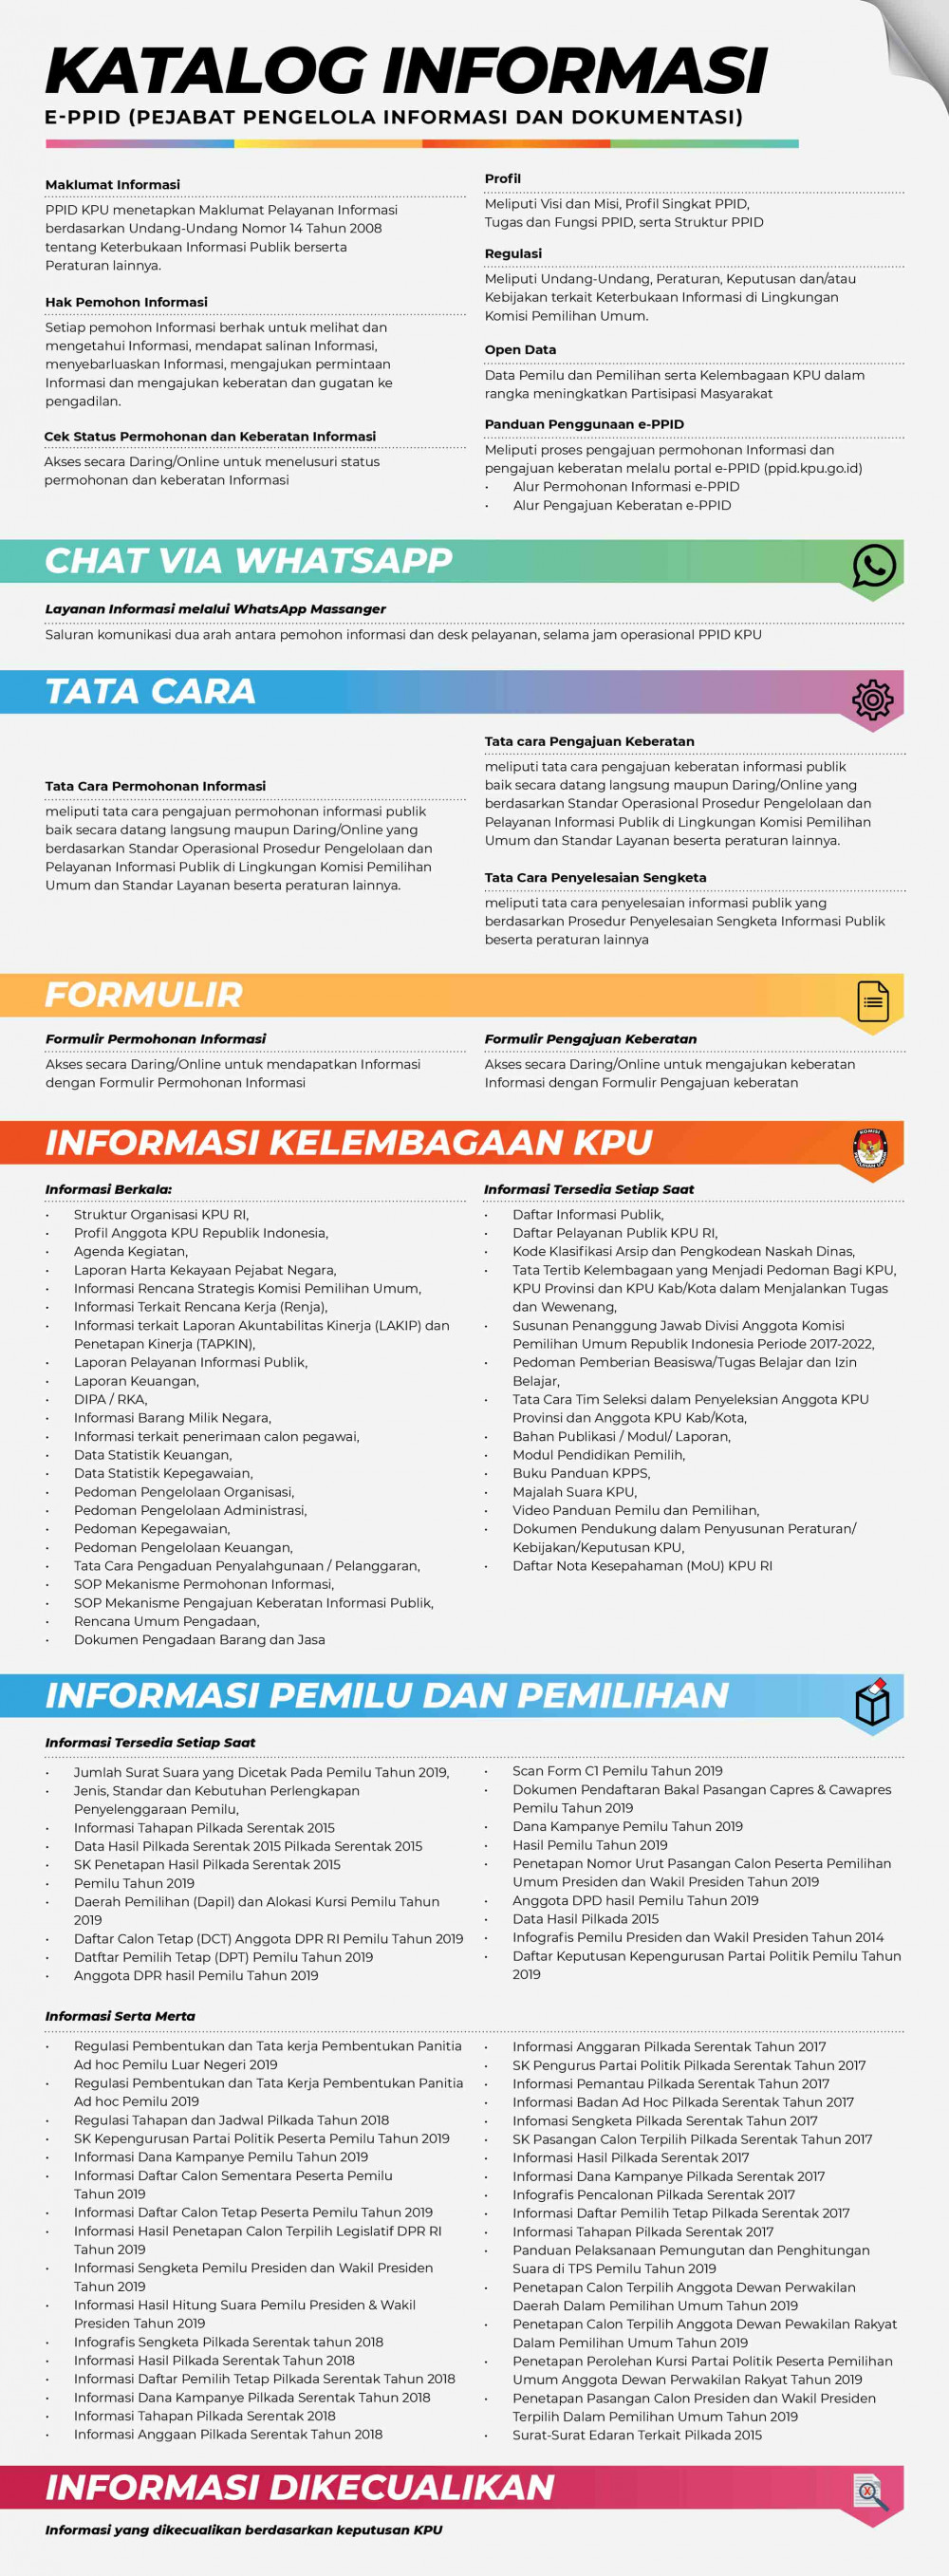 e-PPID KPU Kabupaten Bantaeng